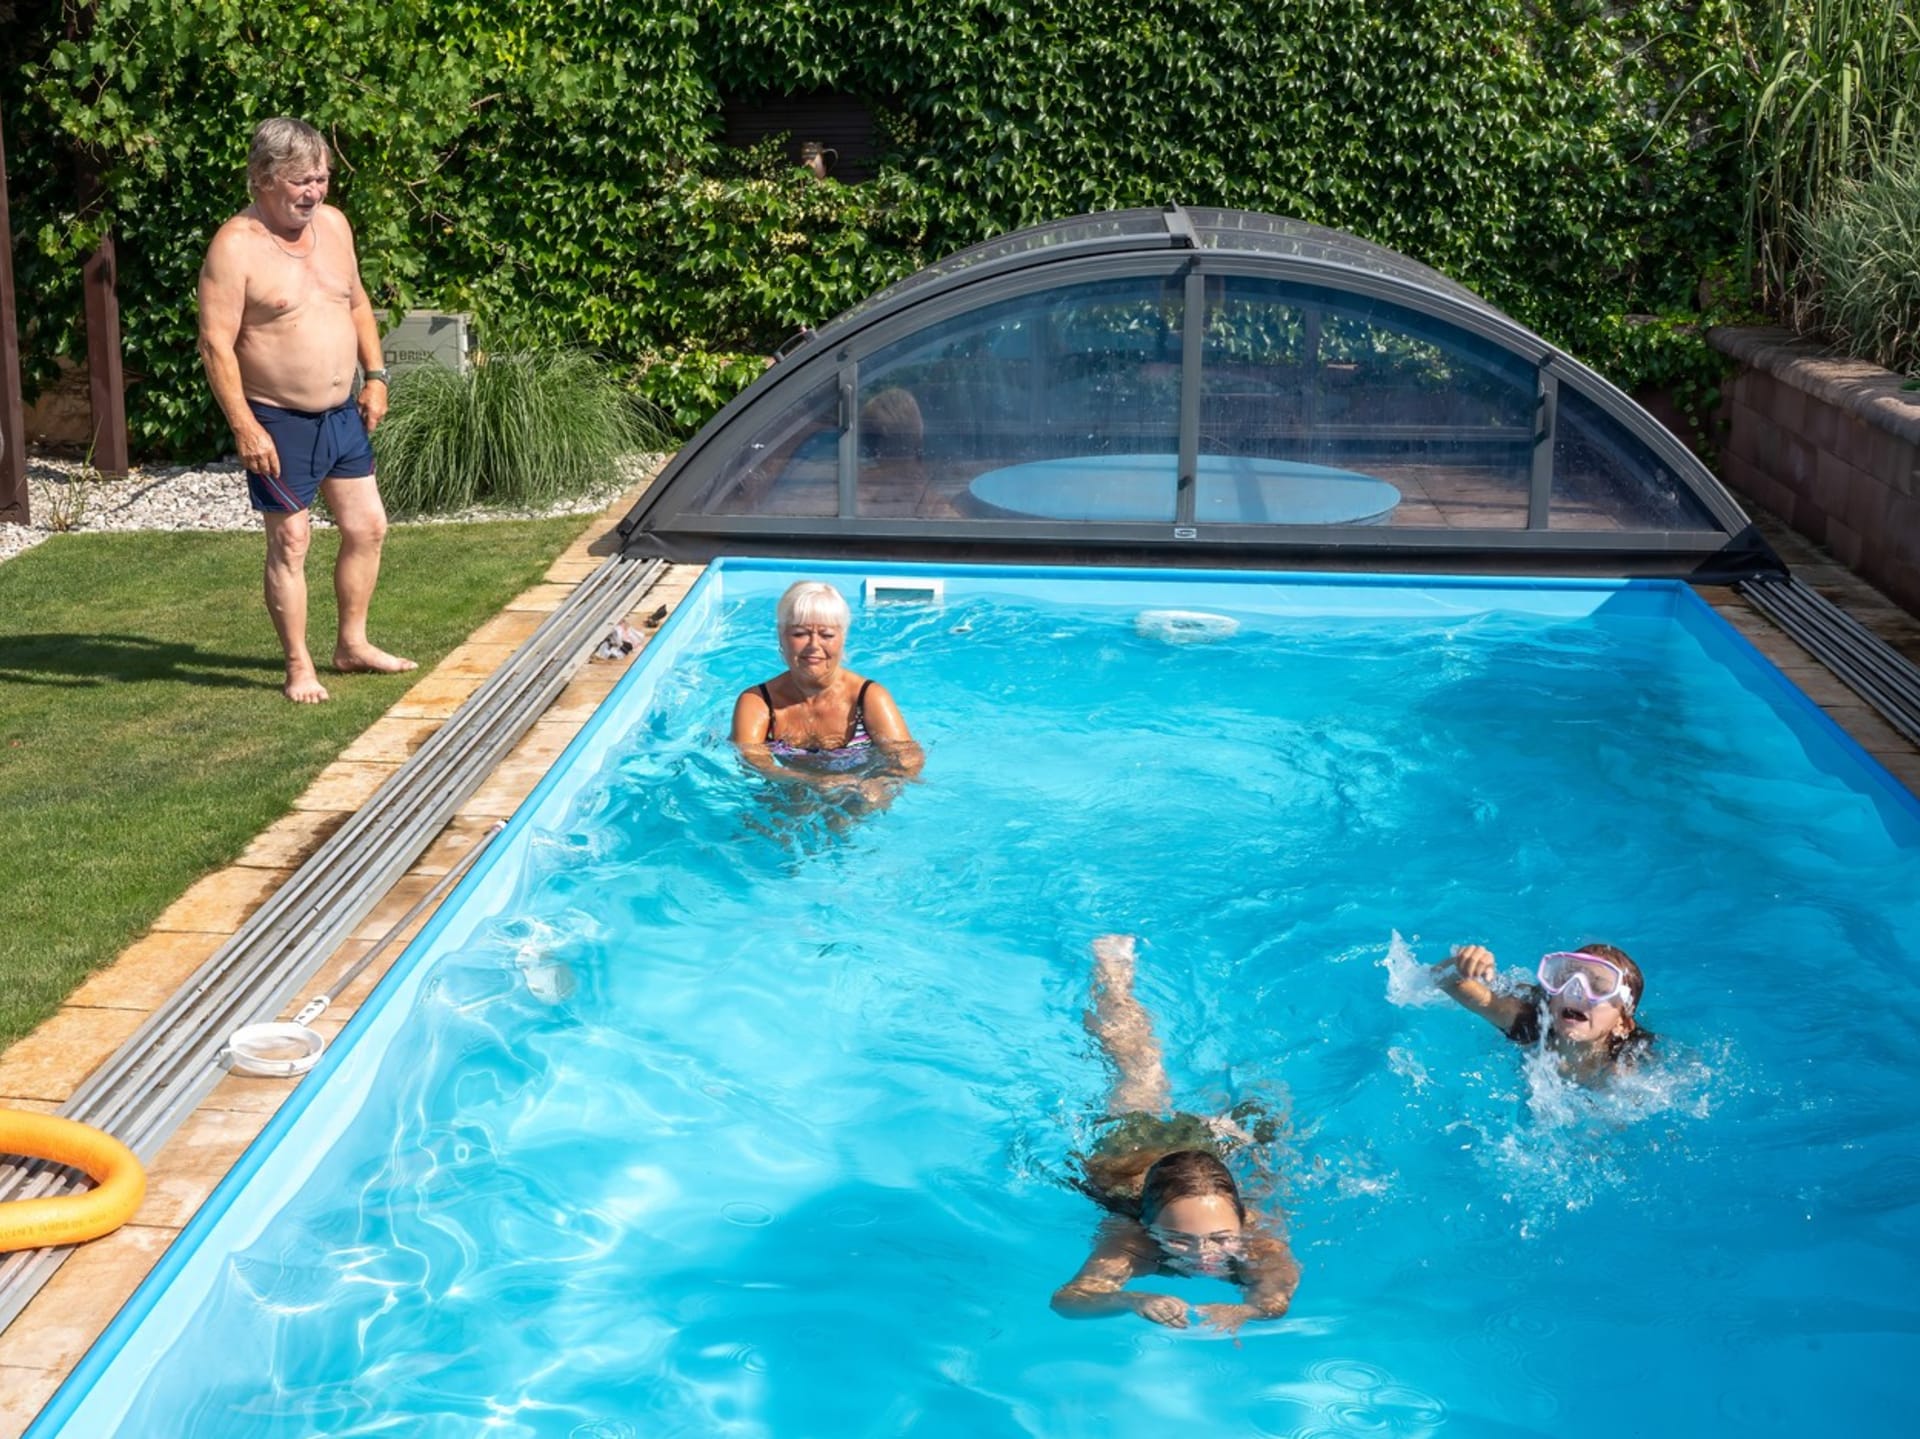 Bazén, který si nechali na chalupě vybudovat na zahradě, představuje ráj pro celou rodinu. 